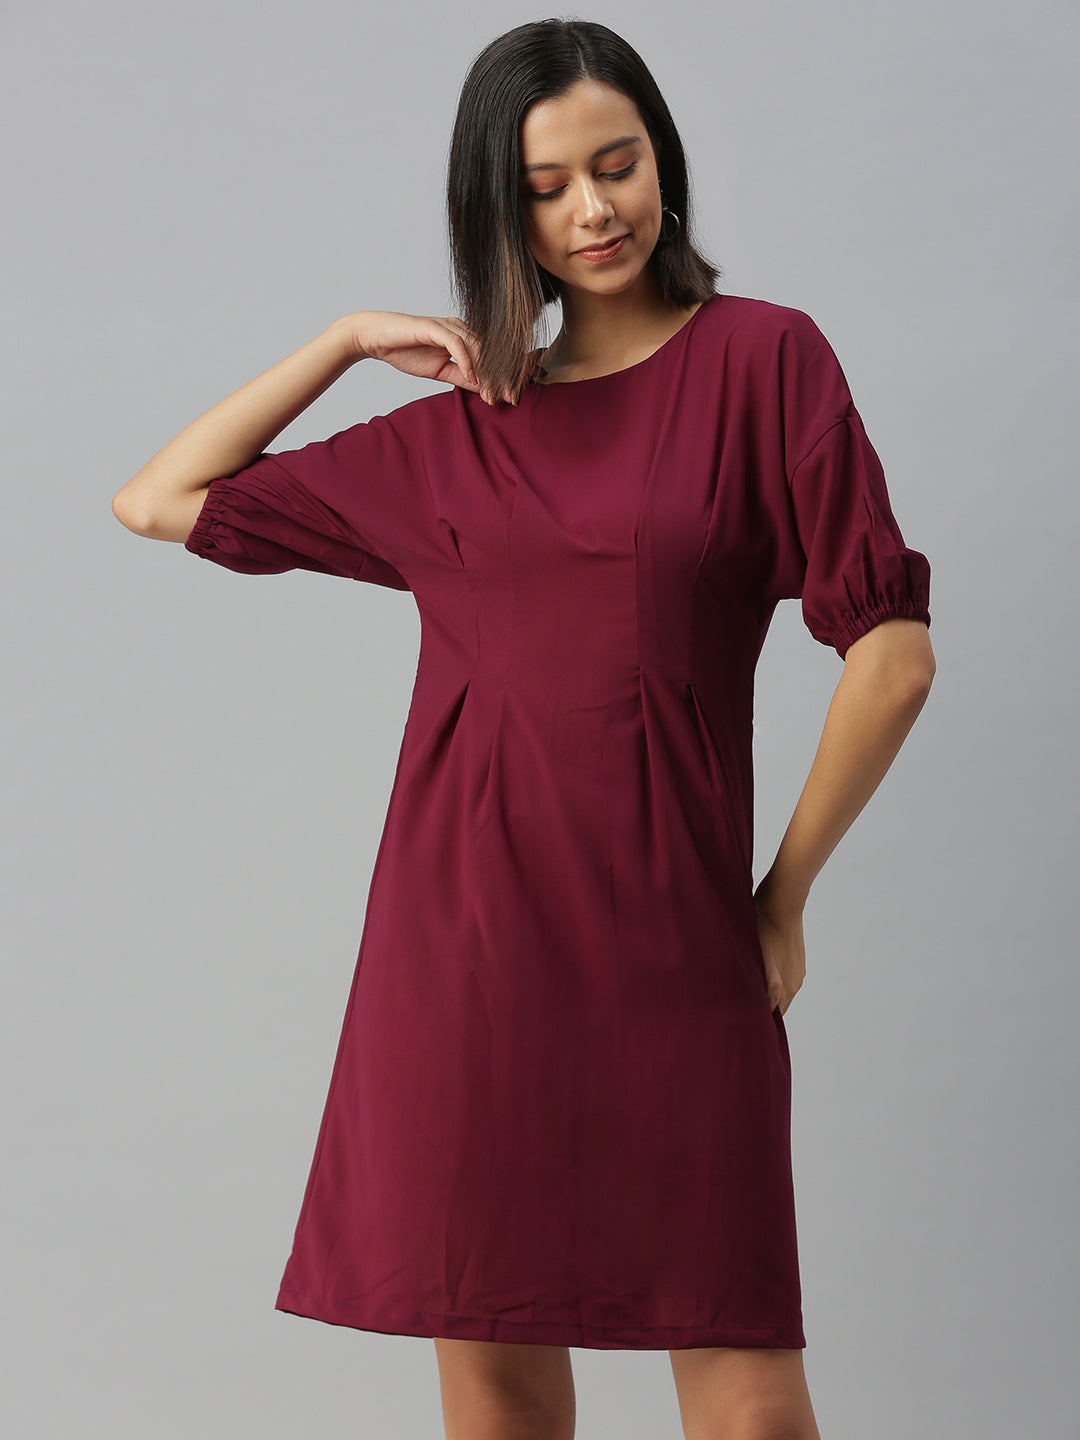 Women's Purple Solid A-Line Dress